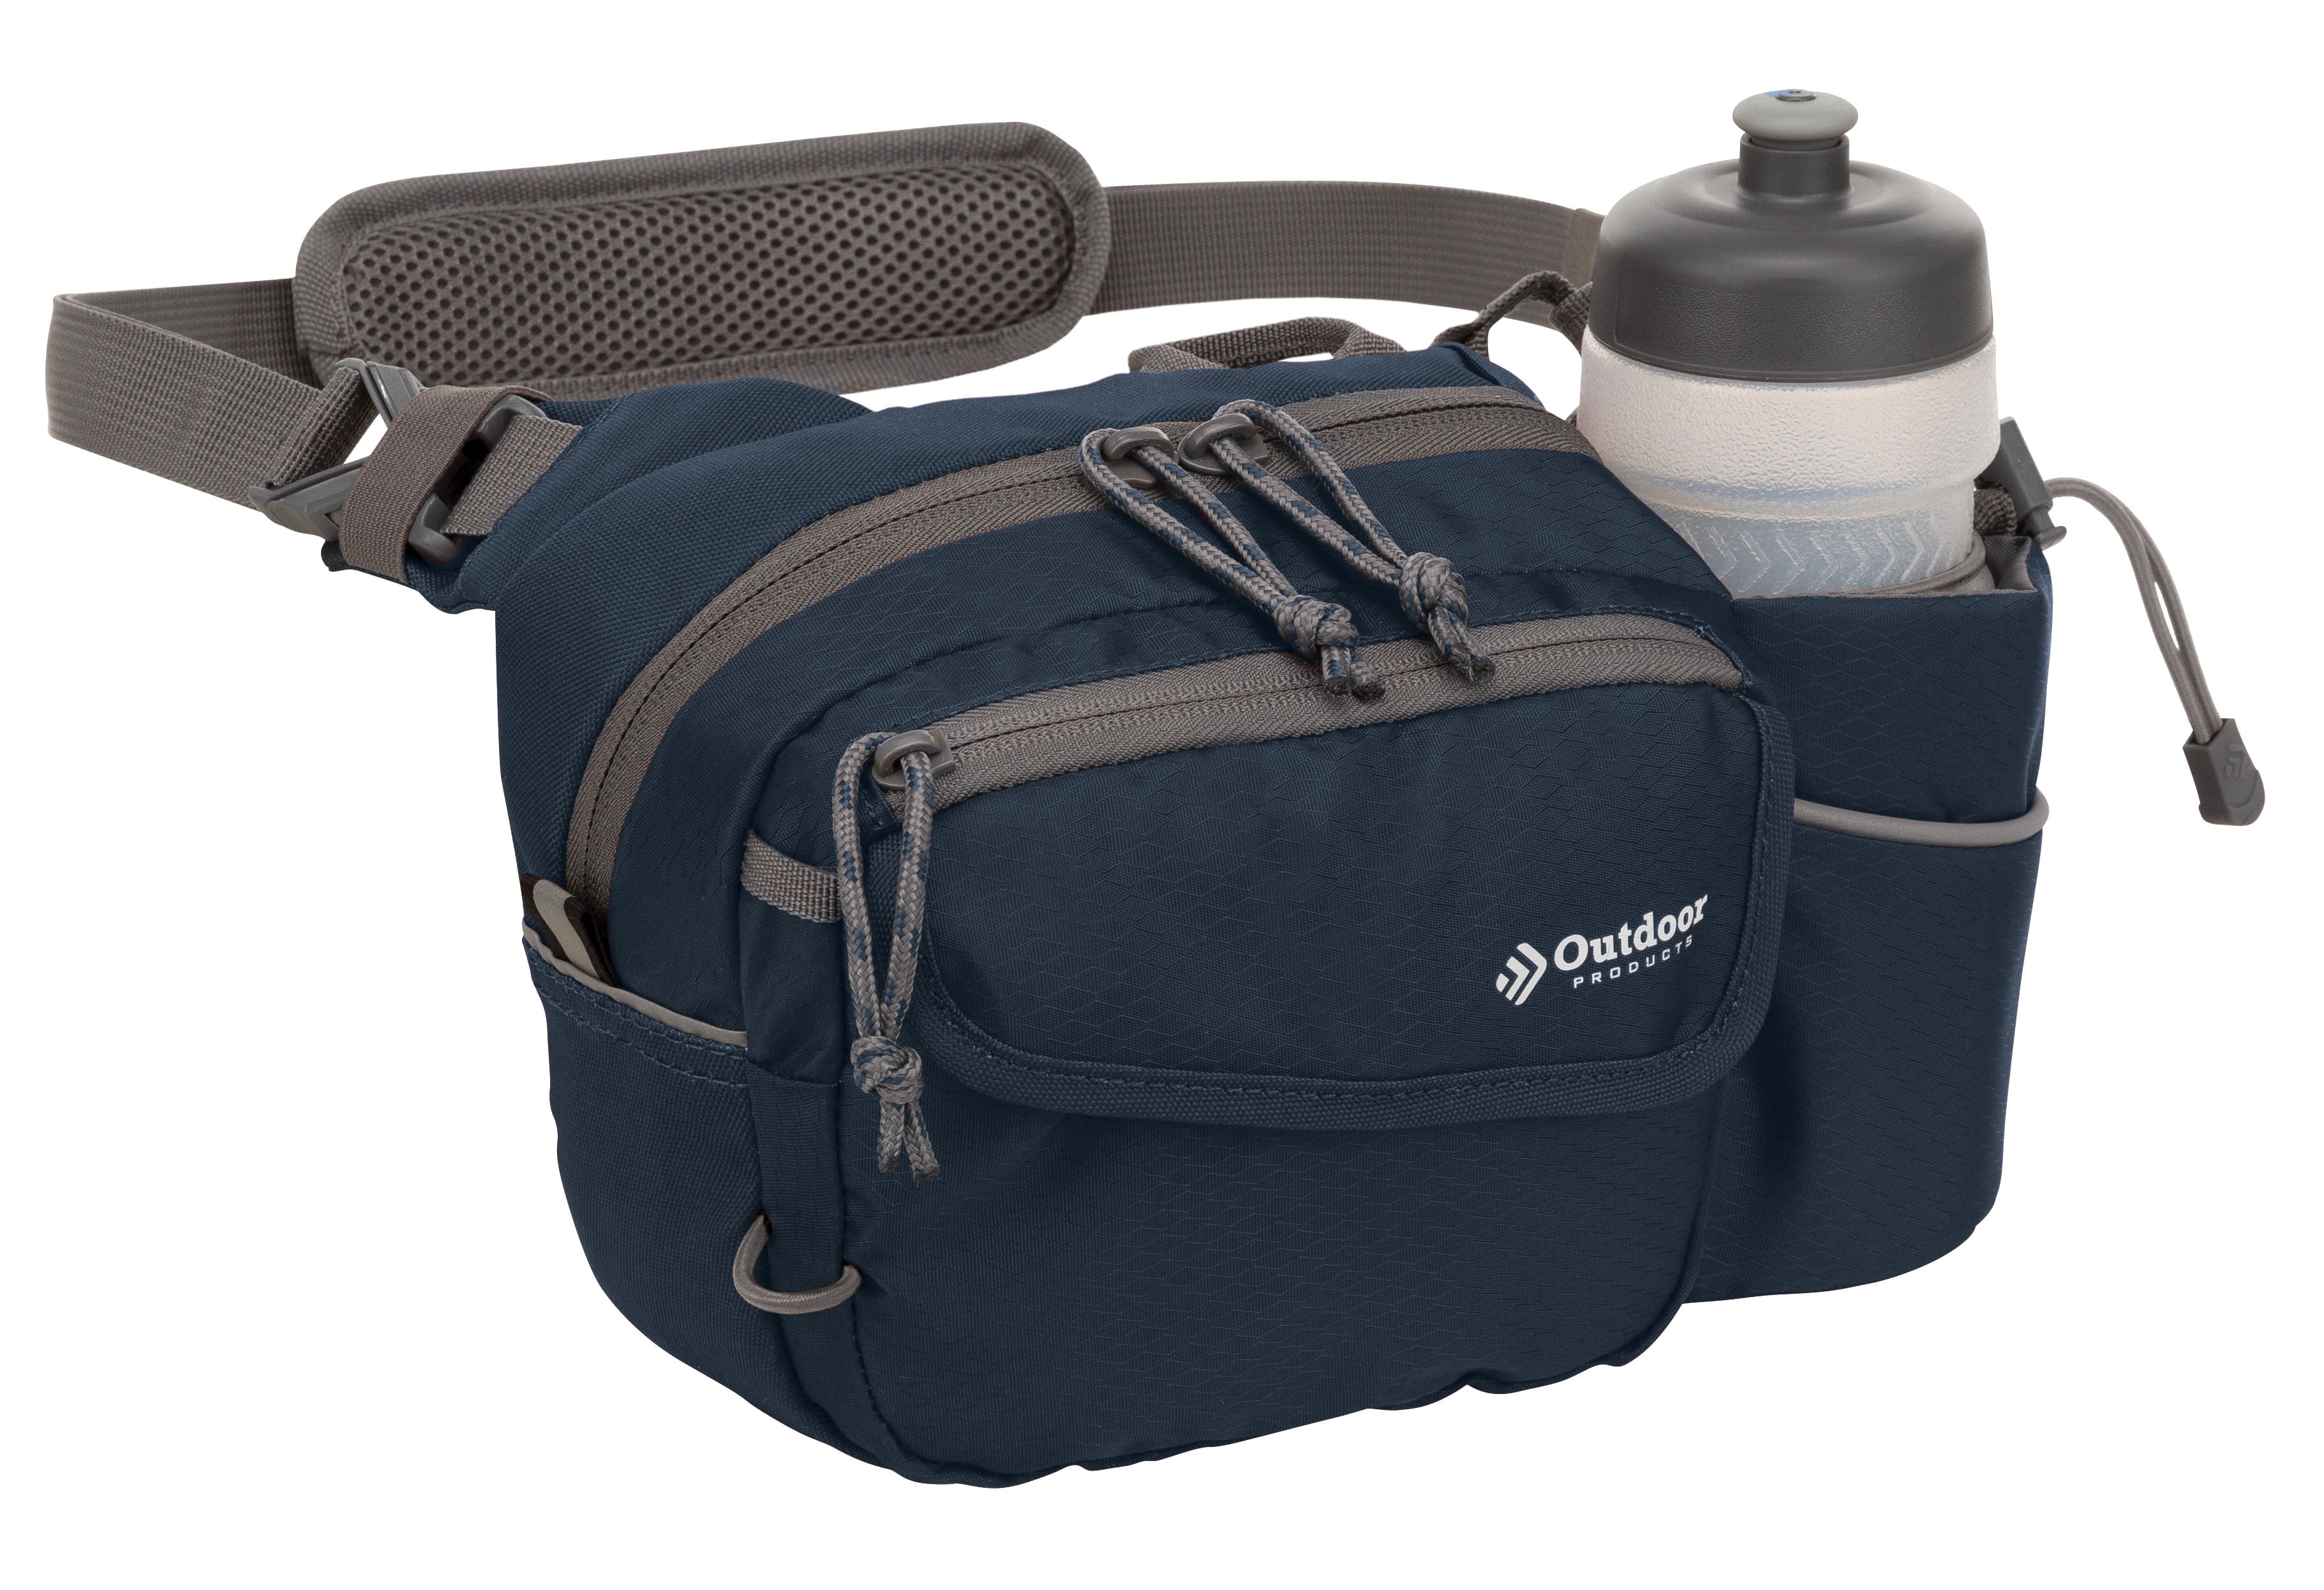 Outdoor Products Melrose 3 Ltr Waist Pack Shoulder Bag Fanny Pack, Blue,  Unisex - Walmart.com